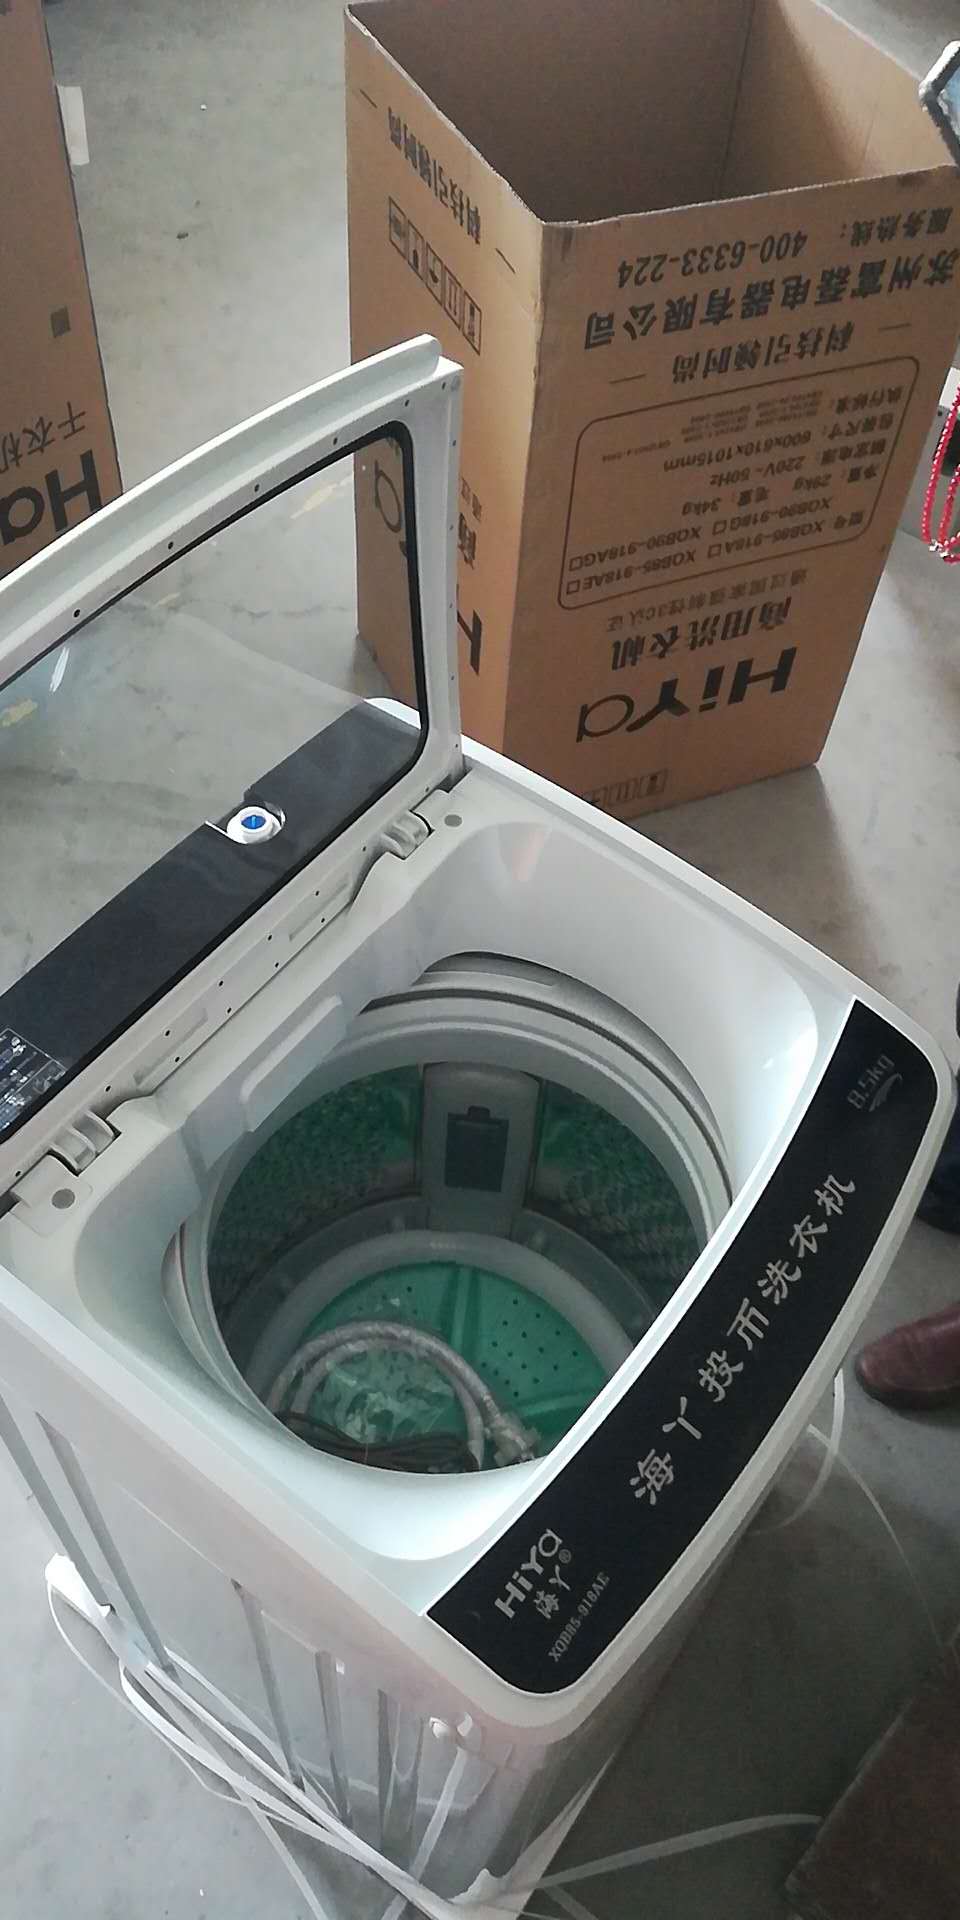 供应8.5公斤洗被机 大容量投币洗衣机洗被机 扫码支付洗衣机 社区投放洗衣机